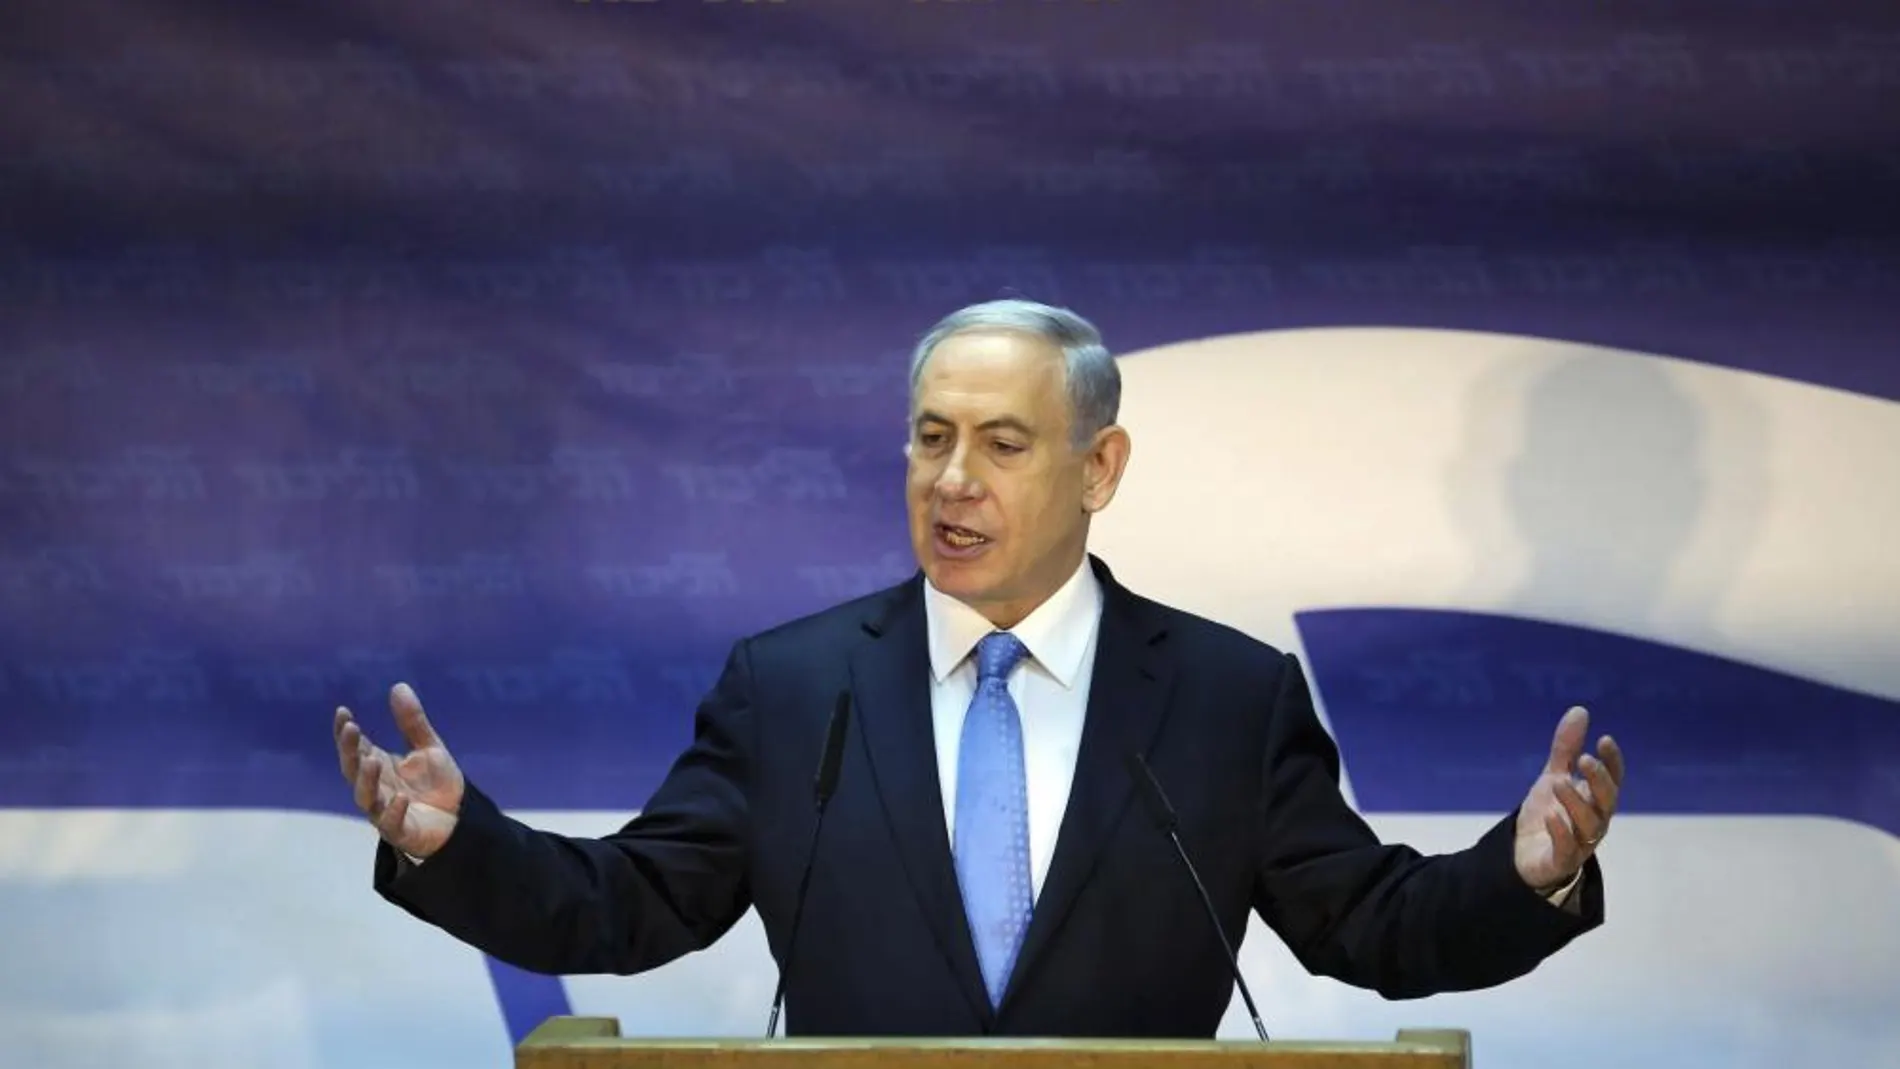 El primer ministro israelí Benjamin Netanyahu ofrece un discruso hoy jueves 1 de enero de 2015.